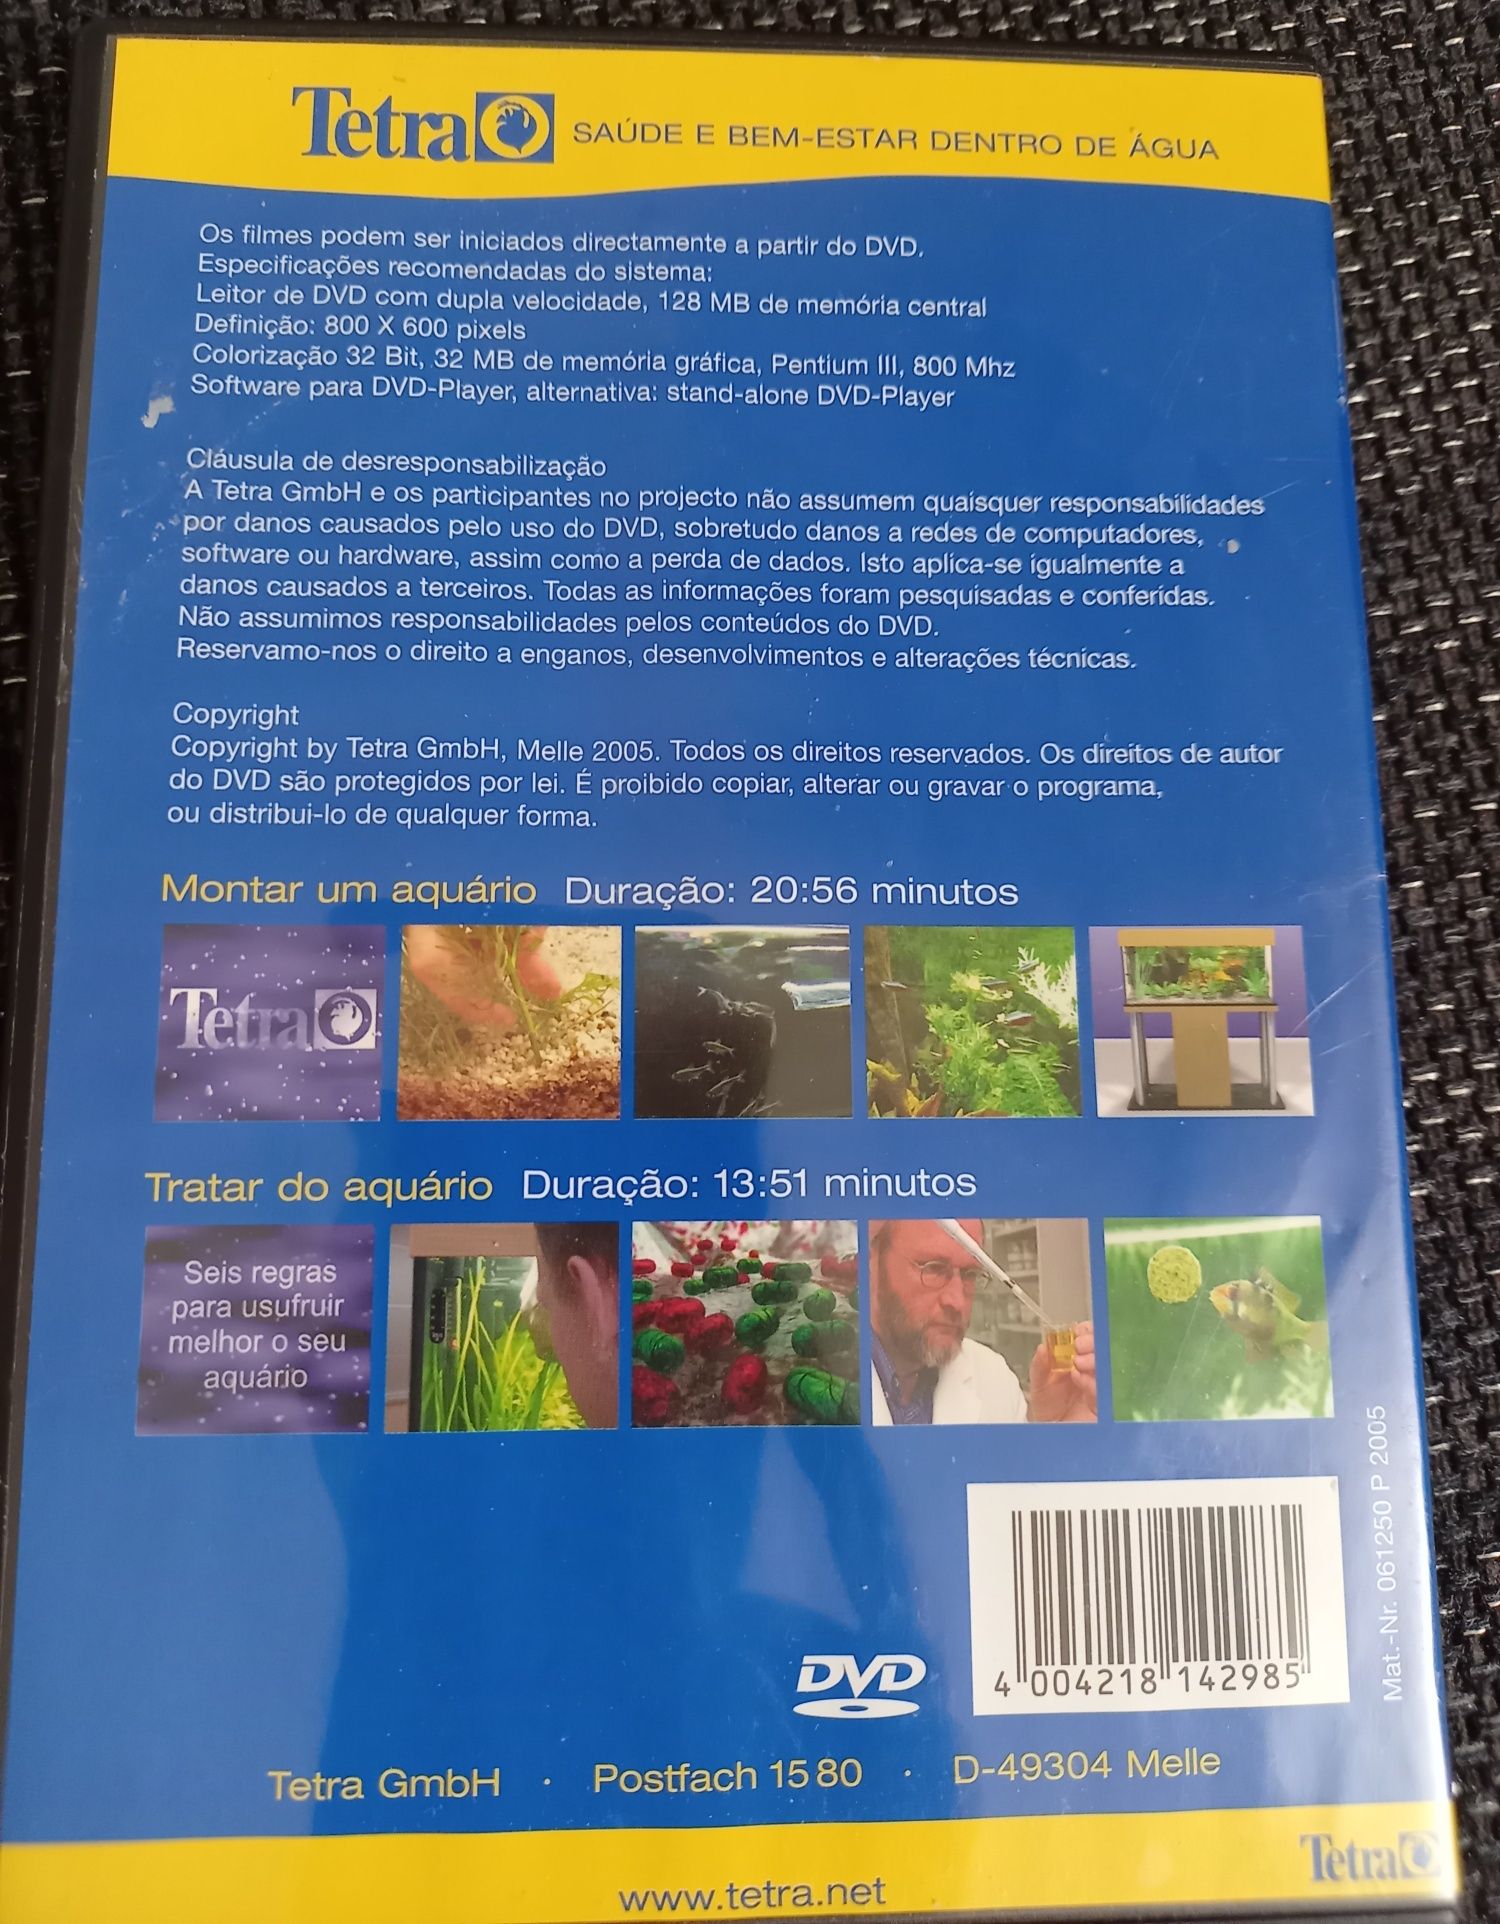 DVD Montar tratar um aquário